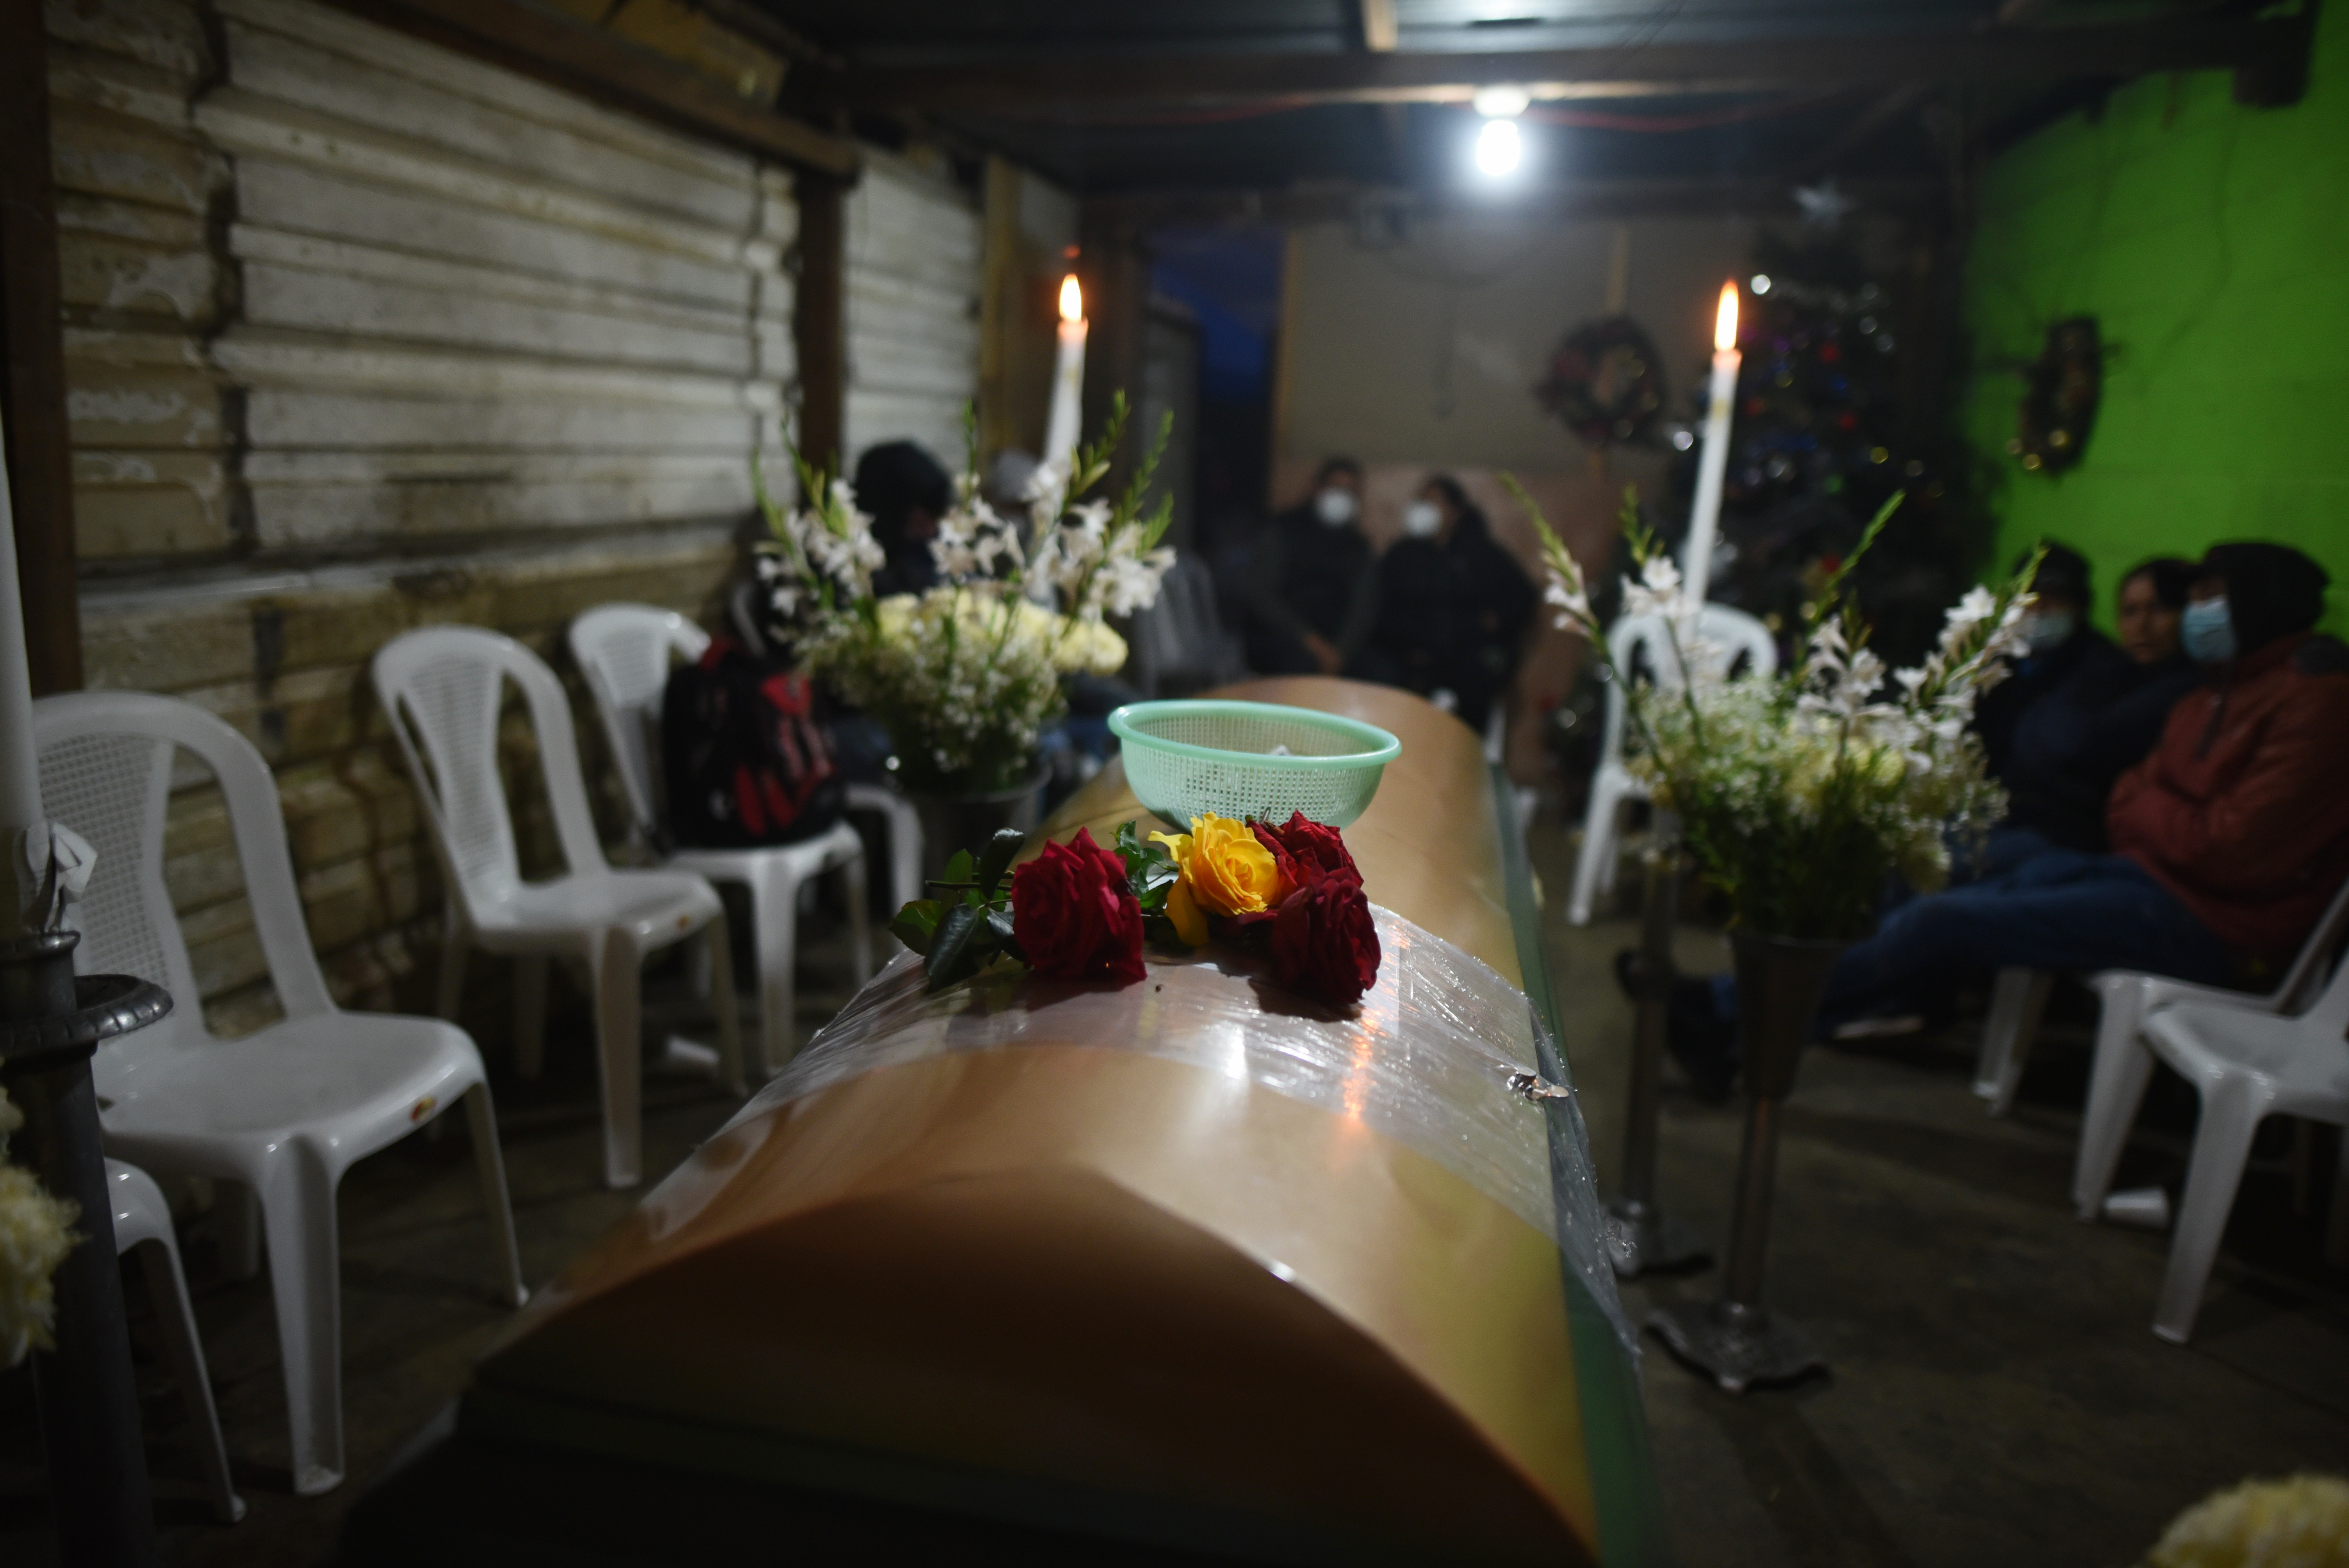 Familiares y amigos asisten al funeral de Daniel Arnulfo Pérez, migrante guatemalteco que murió en el accidente vial en Chiapas, México. Pérez era originario de El Tejar, Chimaltenango. (Foto Prensa Libre: EFE)